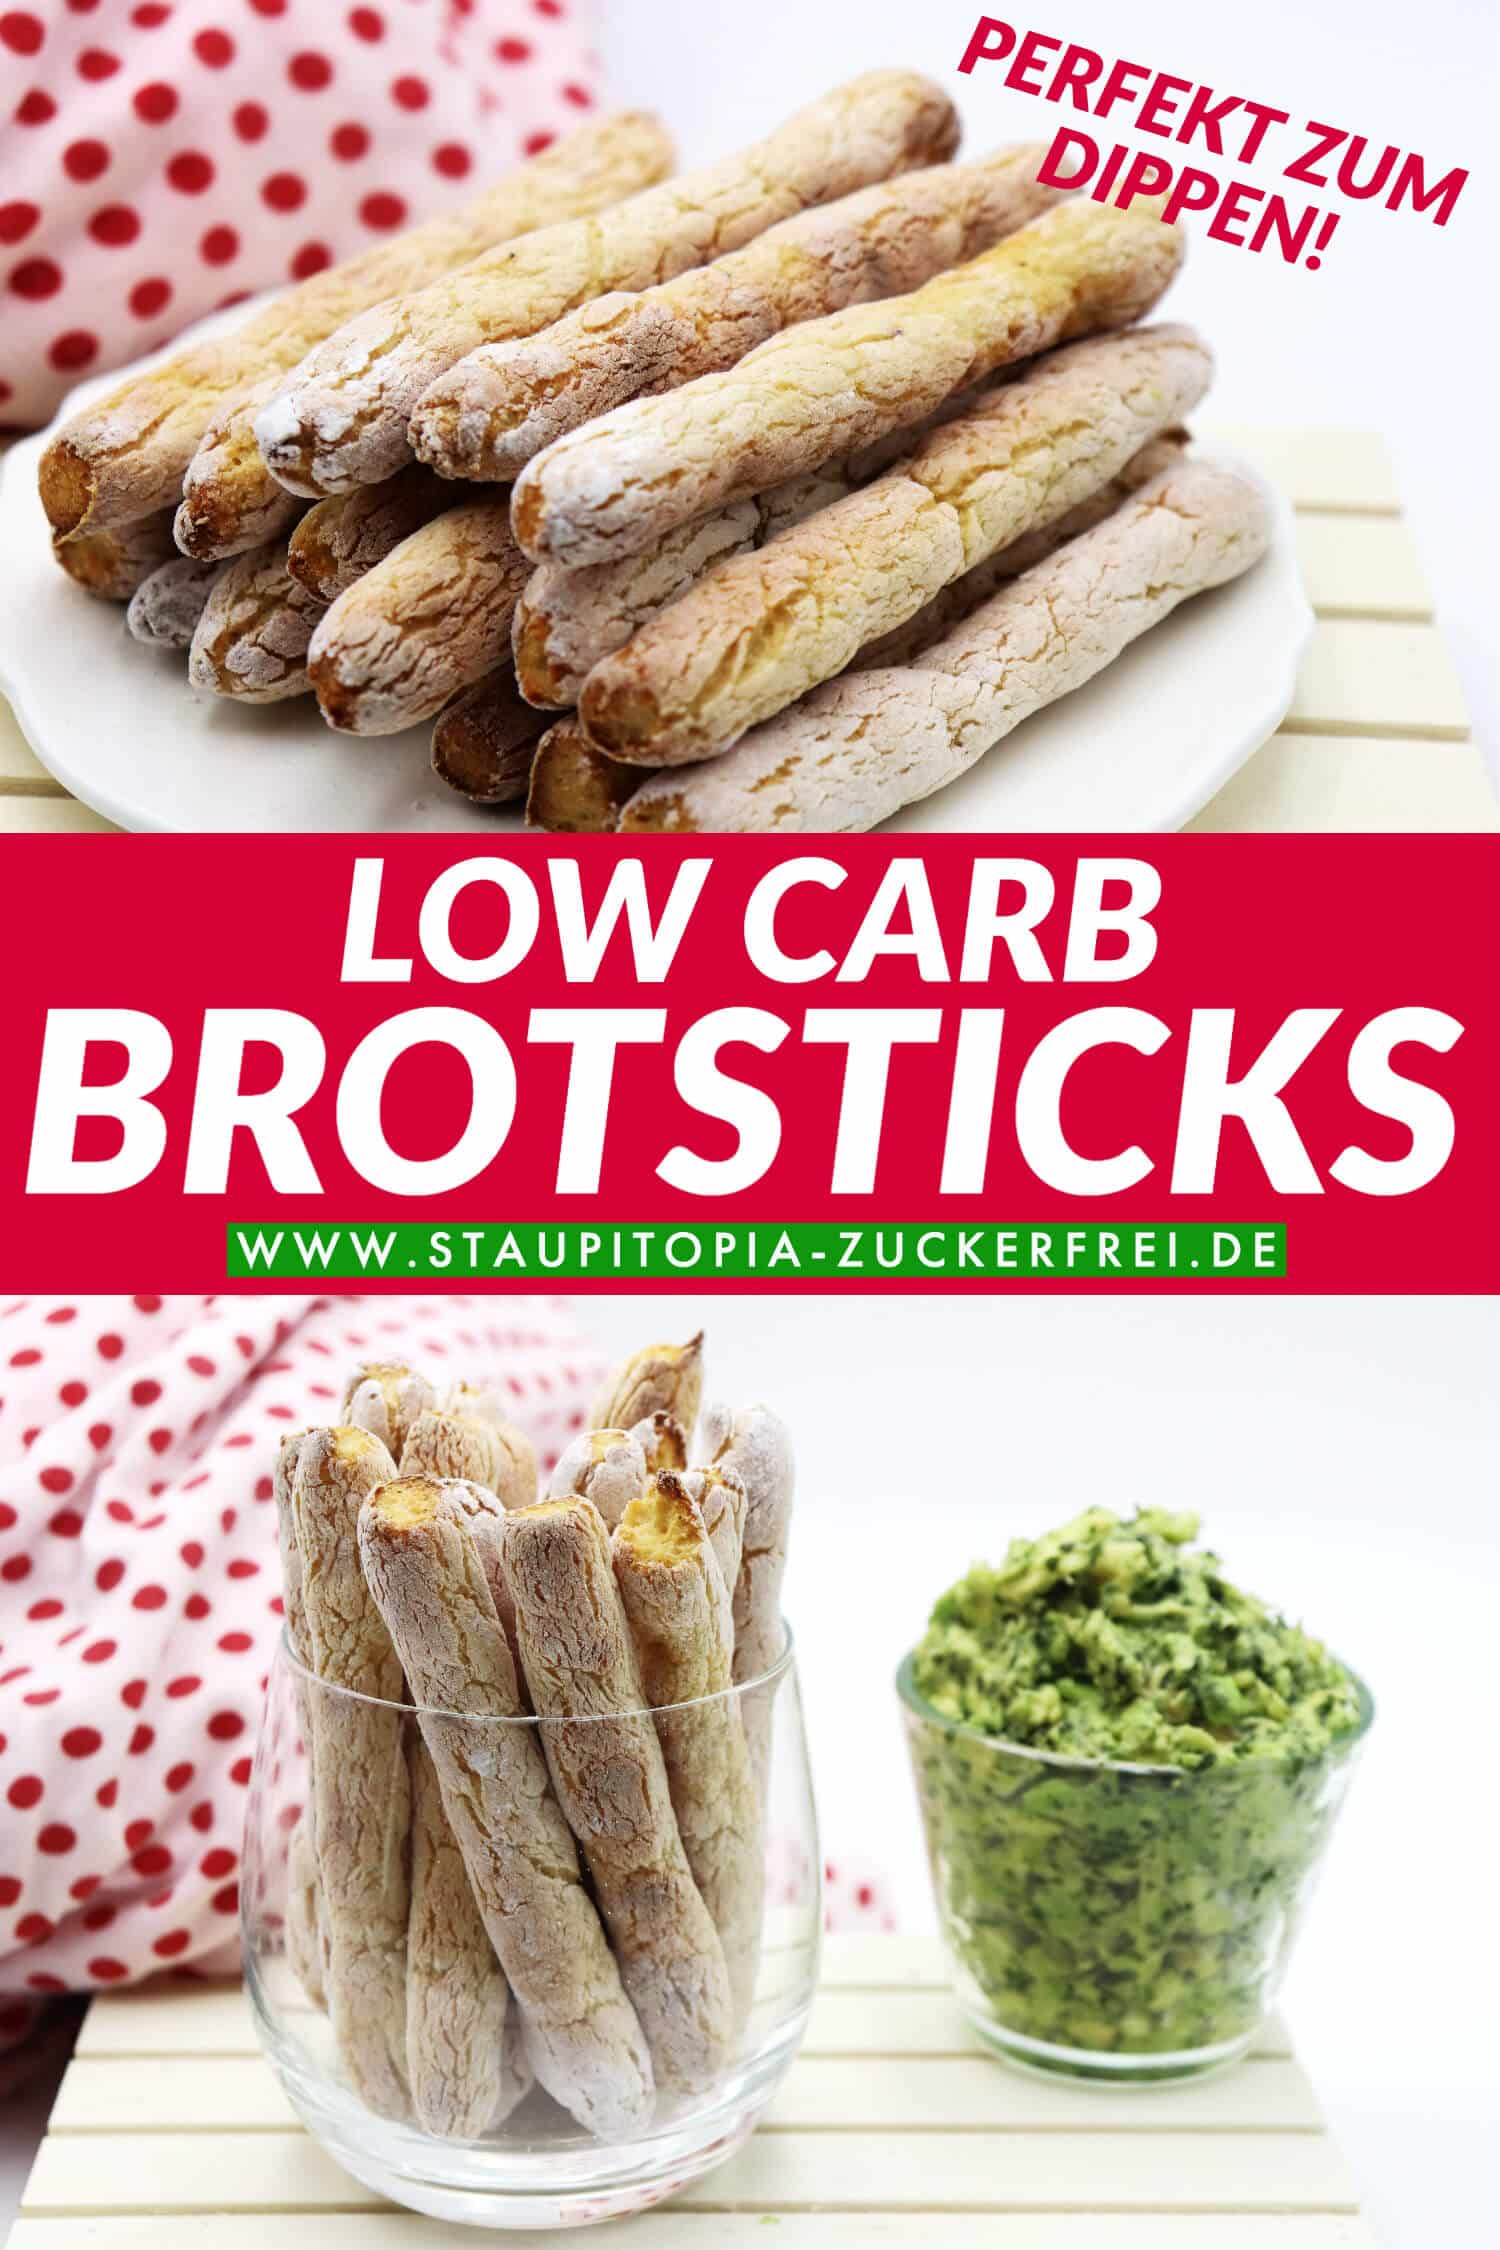 Low Carb Brotsticks perfekt zum dippen und als Beilage zum Grillen.